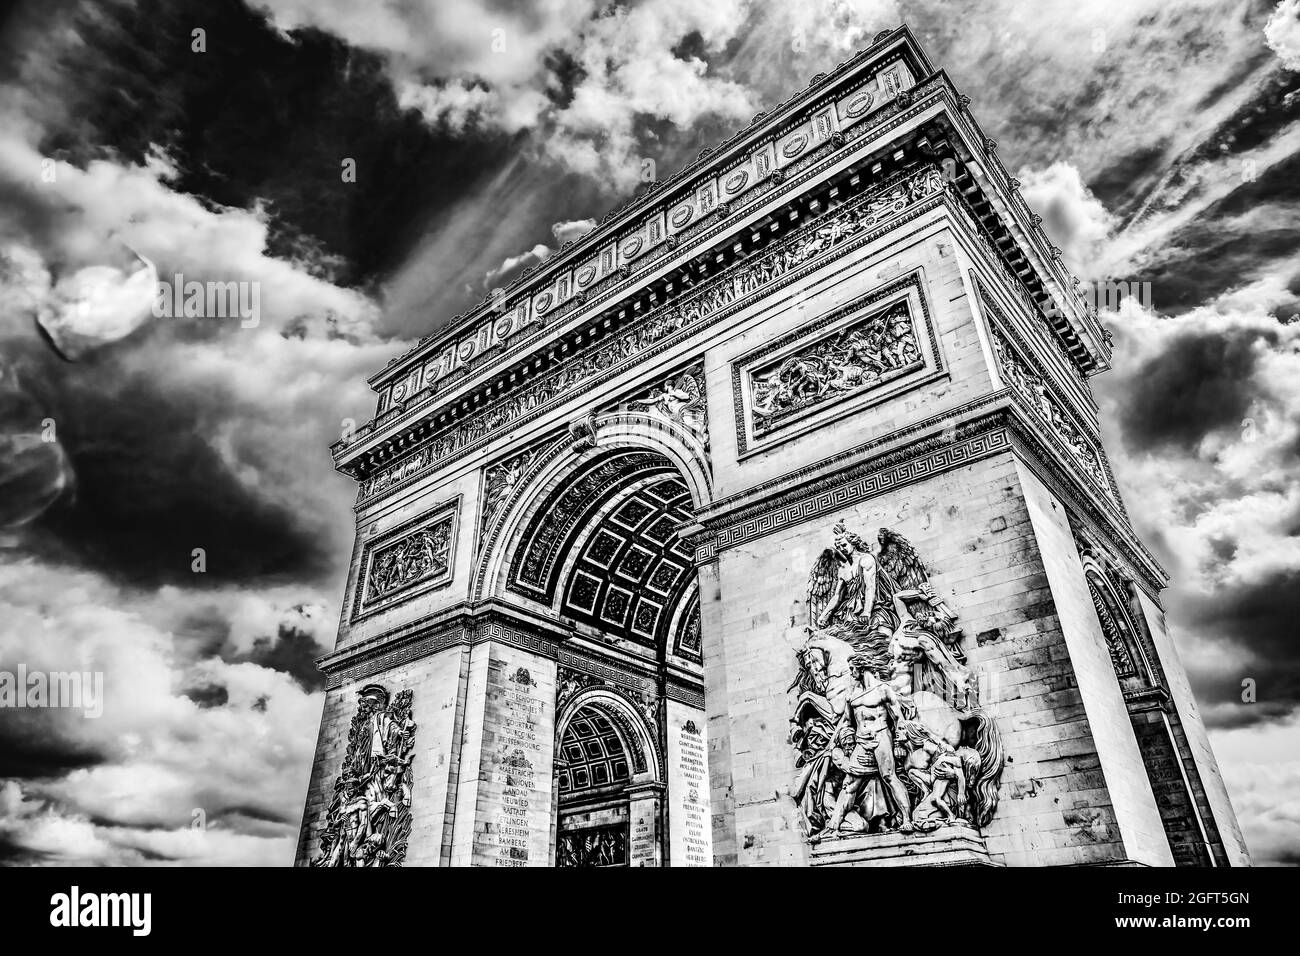 Schwarzer weißer Triumphbogen Place Charles de Gaulle Paris Frankreich. Bis zu den Champs Elysees, dem Ort des französischen Unkown-Soldaten. Ehrt diejenigen, die in Rev gekämpft haben Stockfoto